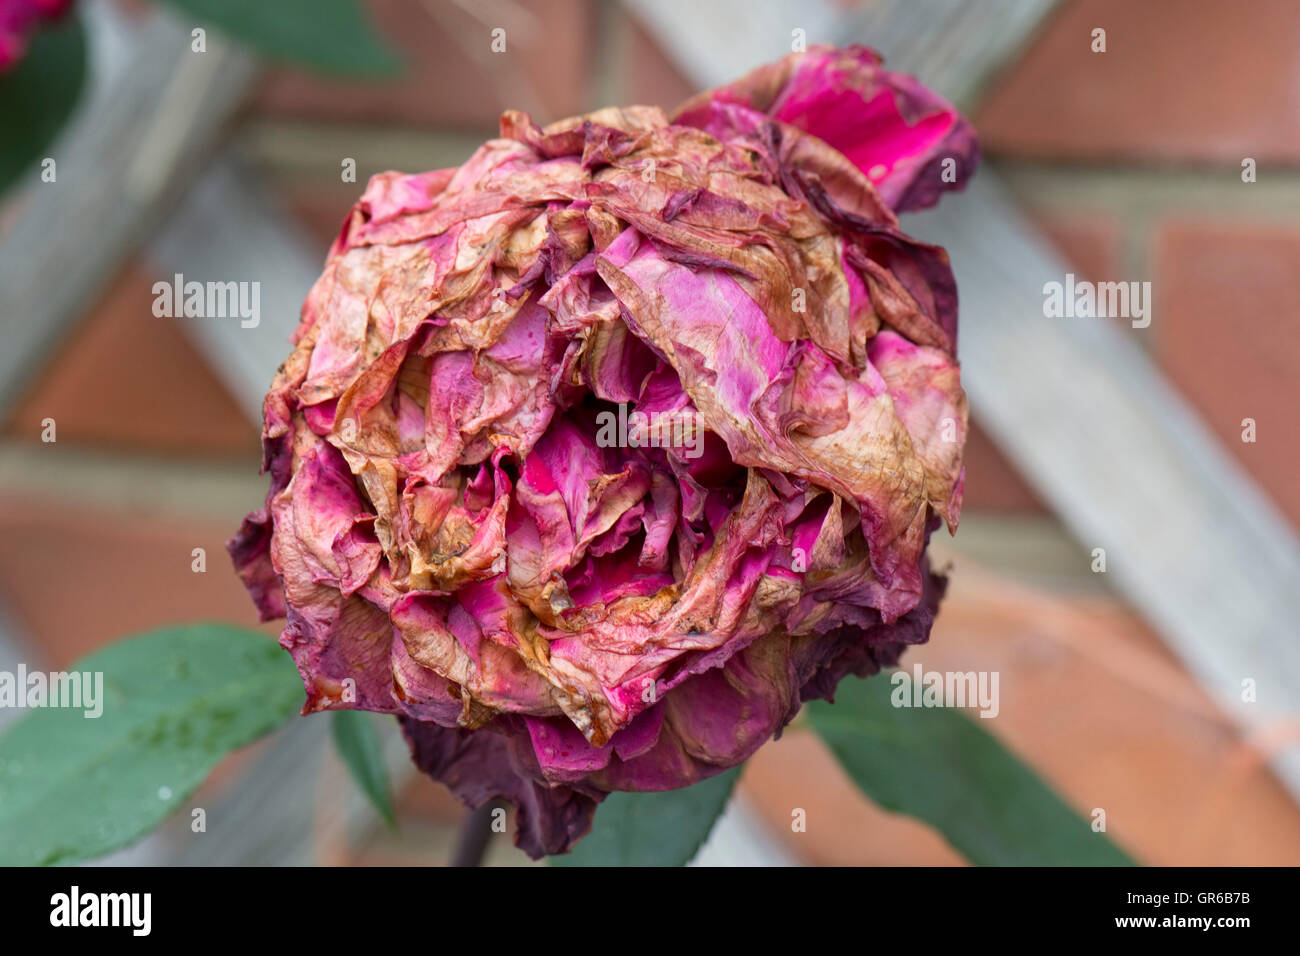 Grauschimmel oder Botrytis Trockenfäule, Botrytis Cinerea, verderben die Blüte von einer roten Rose nach Sommerregen Stockfoto